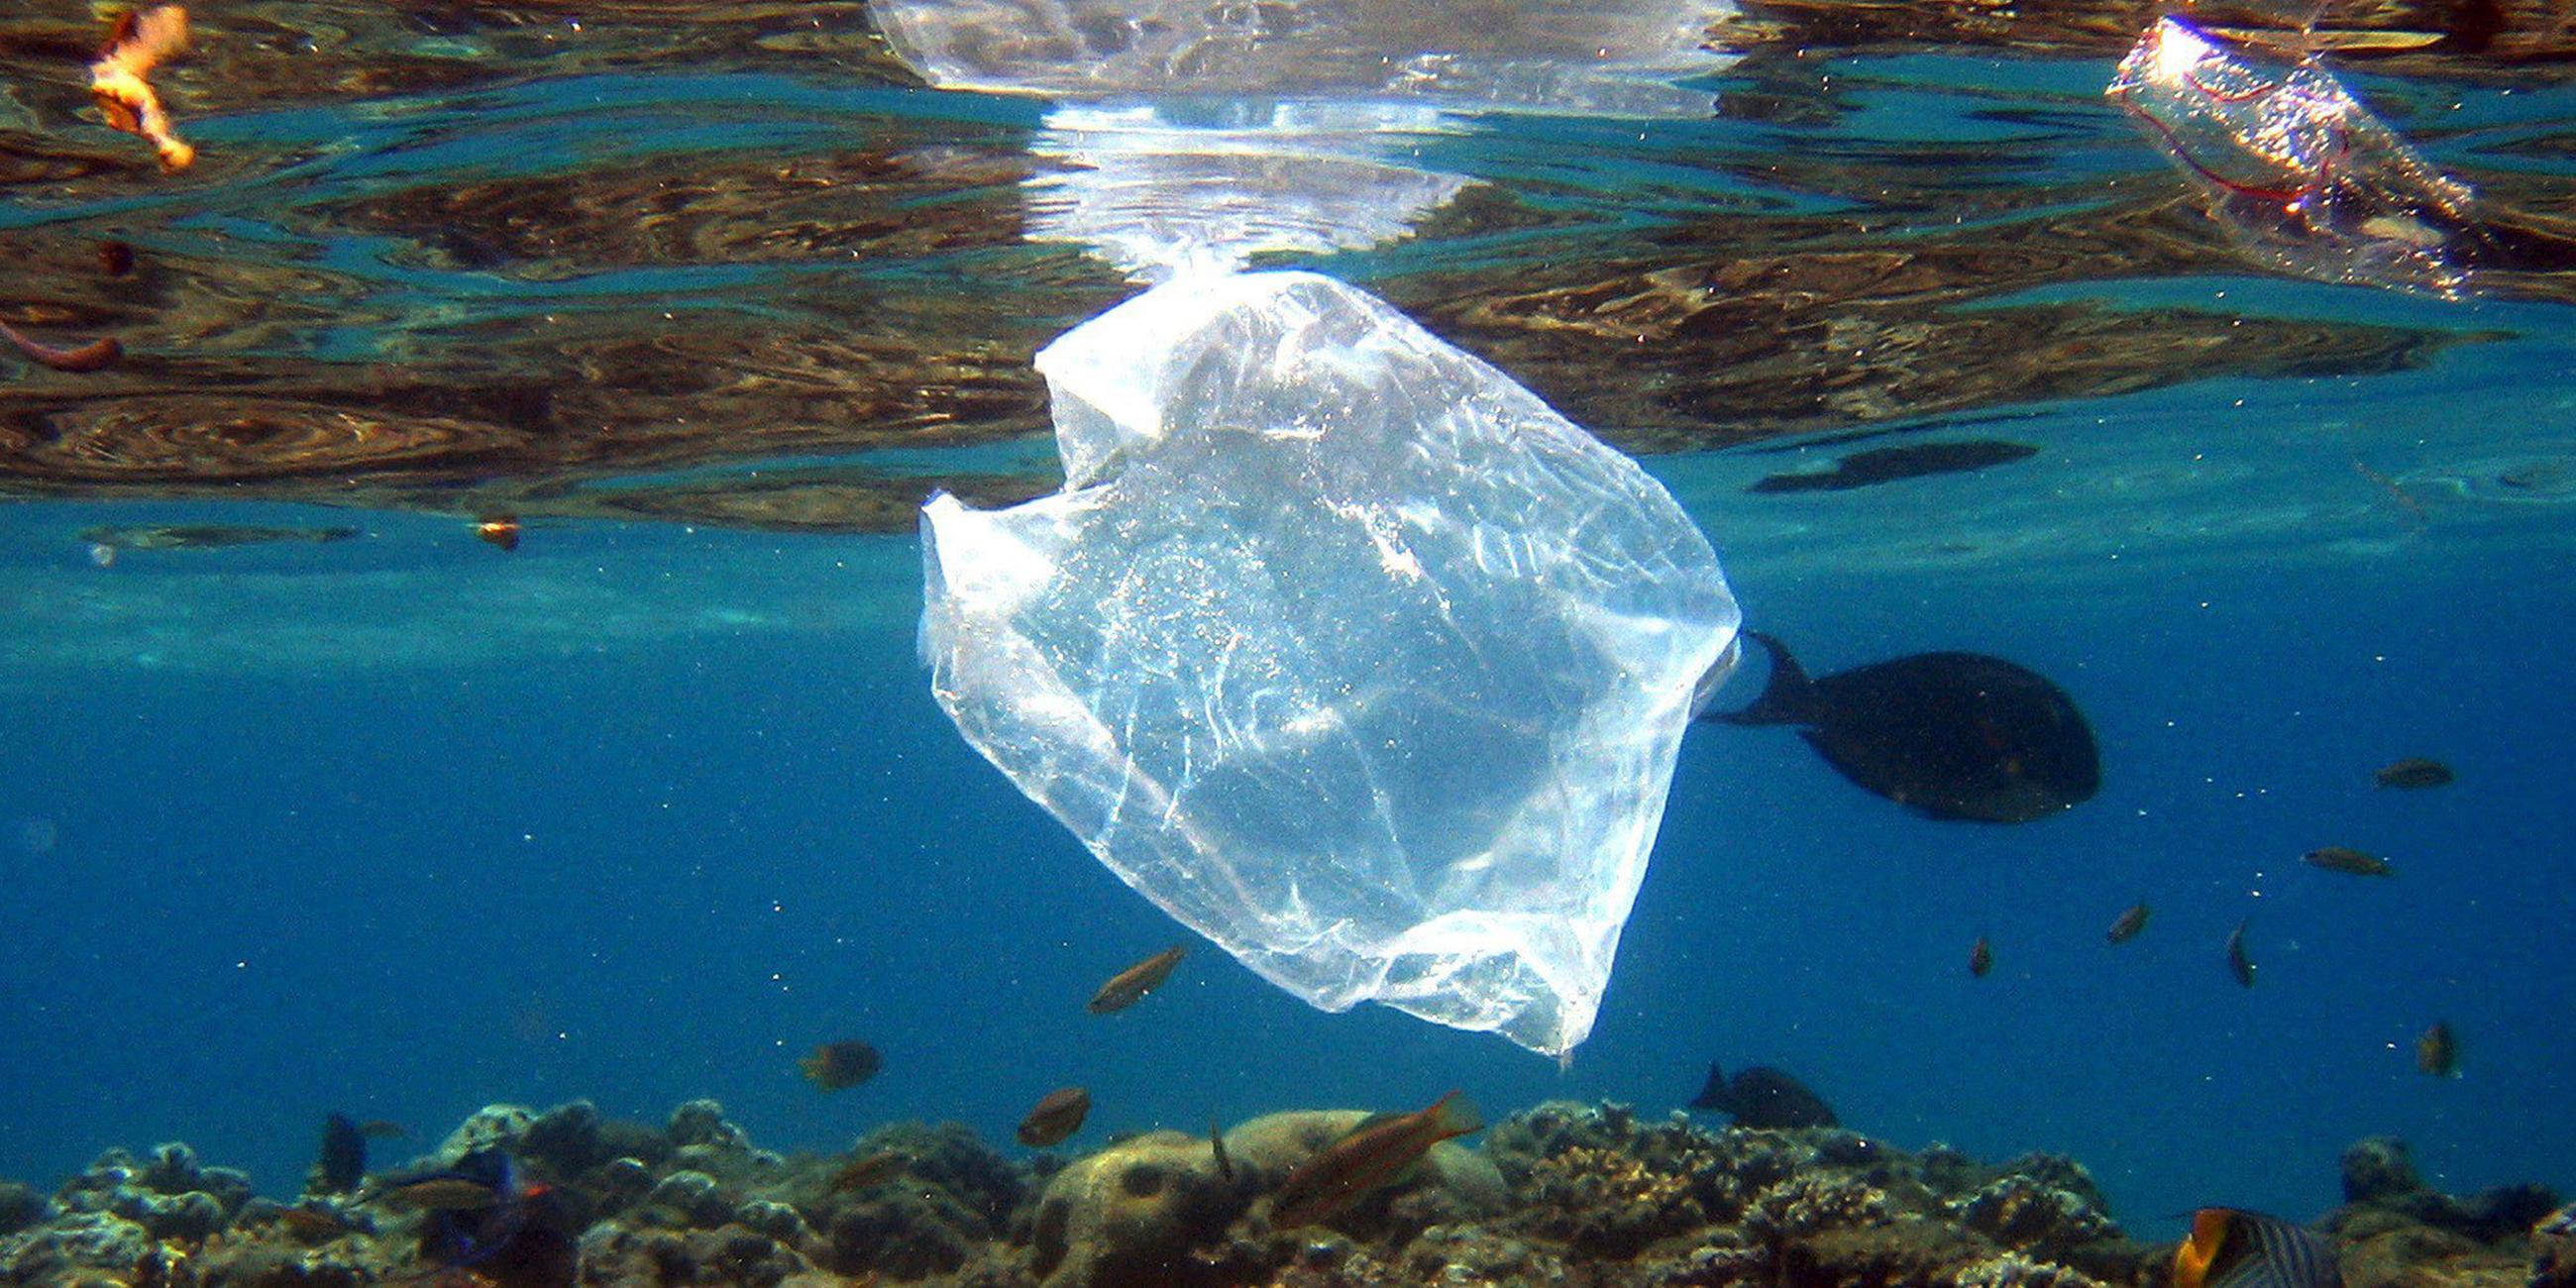 Plastiktüte an einem Korallenriff in Ägypten